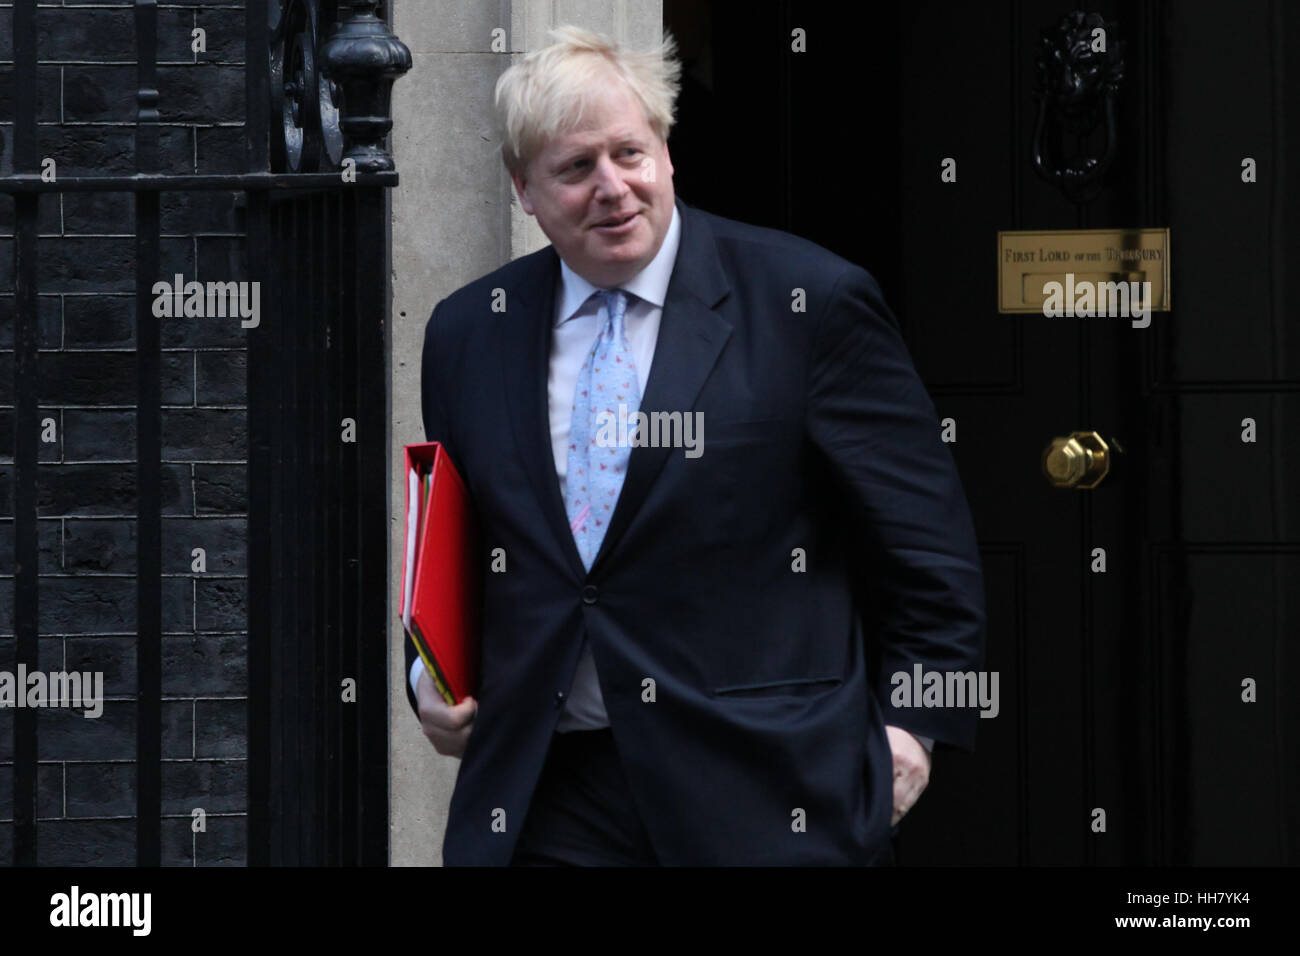 Downing Street, London, UK 17 Jan 2017 - Ministre des affaires étrangères, Boris Johnson quitte après la réunion hebdomadaire du cabinet au numéro 10 Downing Street. Credit : Dinendra Haria/Alamy Live News Banque D'Images